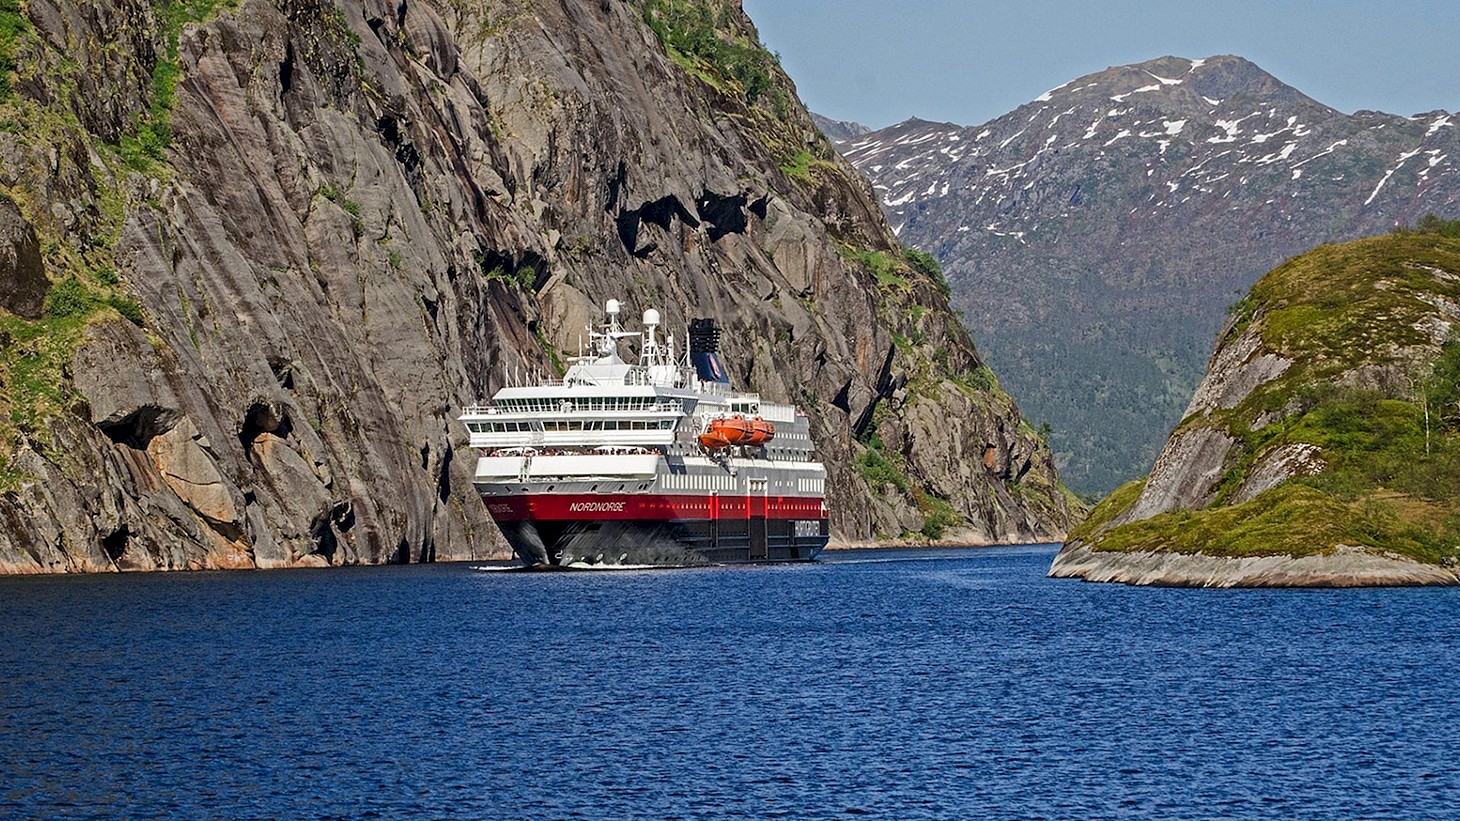 Морской круизный лайнер Норвегия